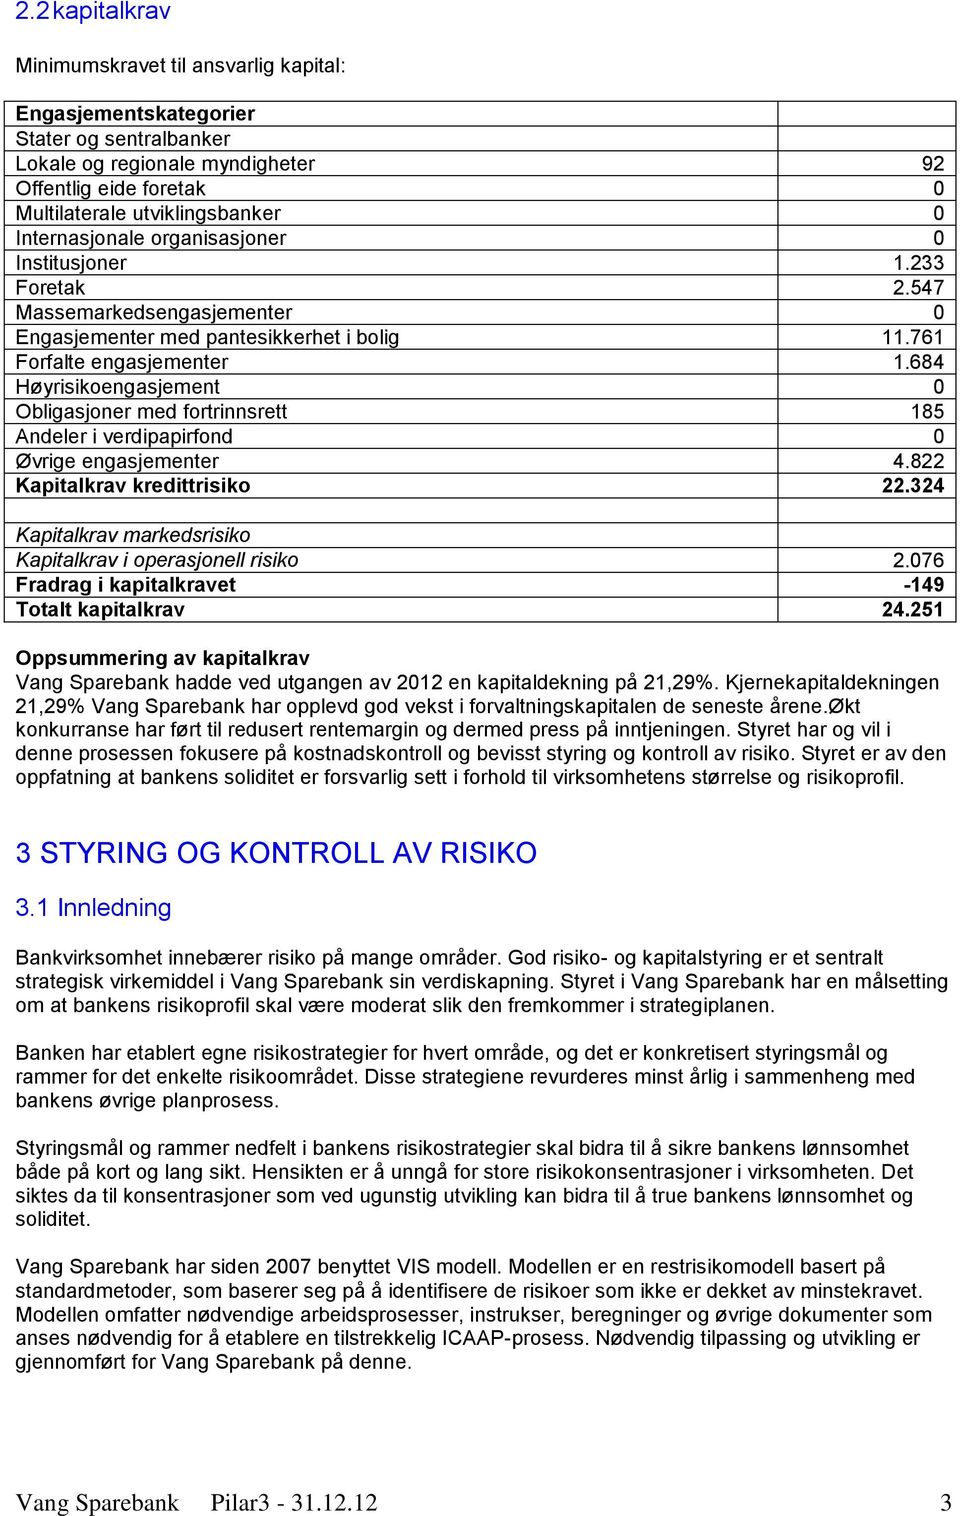 684 Høyrisikoengasjement 0 Obligasjoner med fortrinnsrett 185 Andeler i verdipapirfond 0 Øvrige engasjementer 4.822 Kapitalkrav kredittrisiko 22.